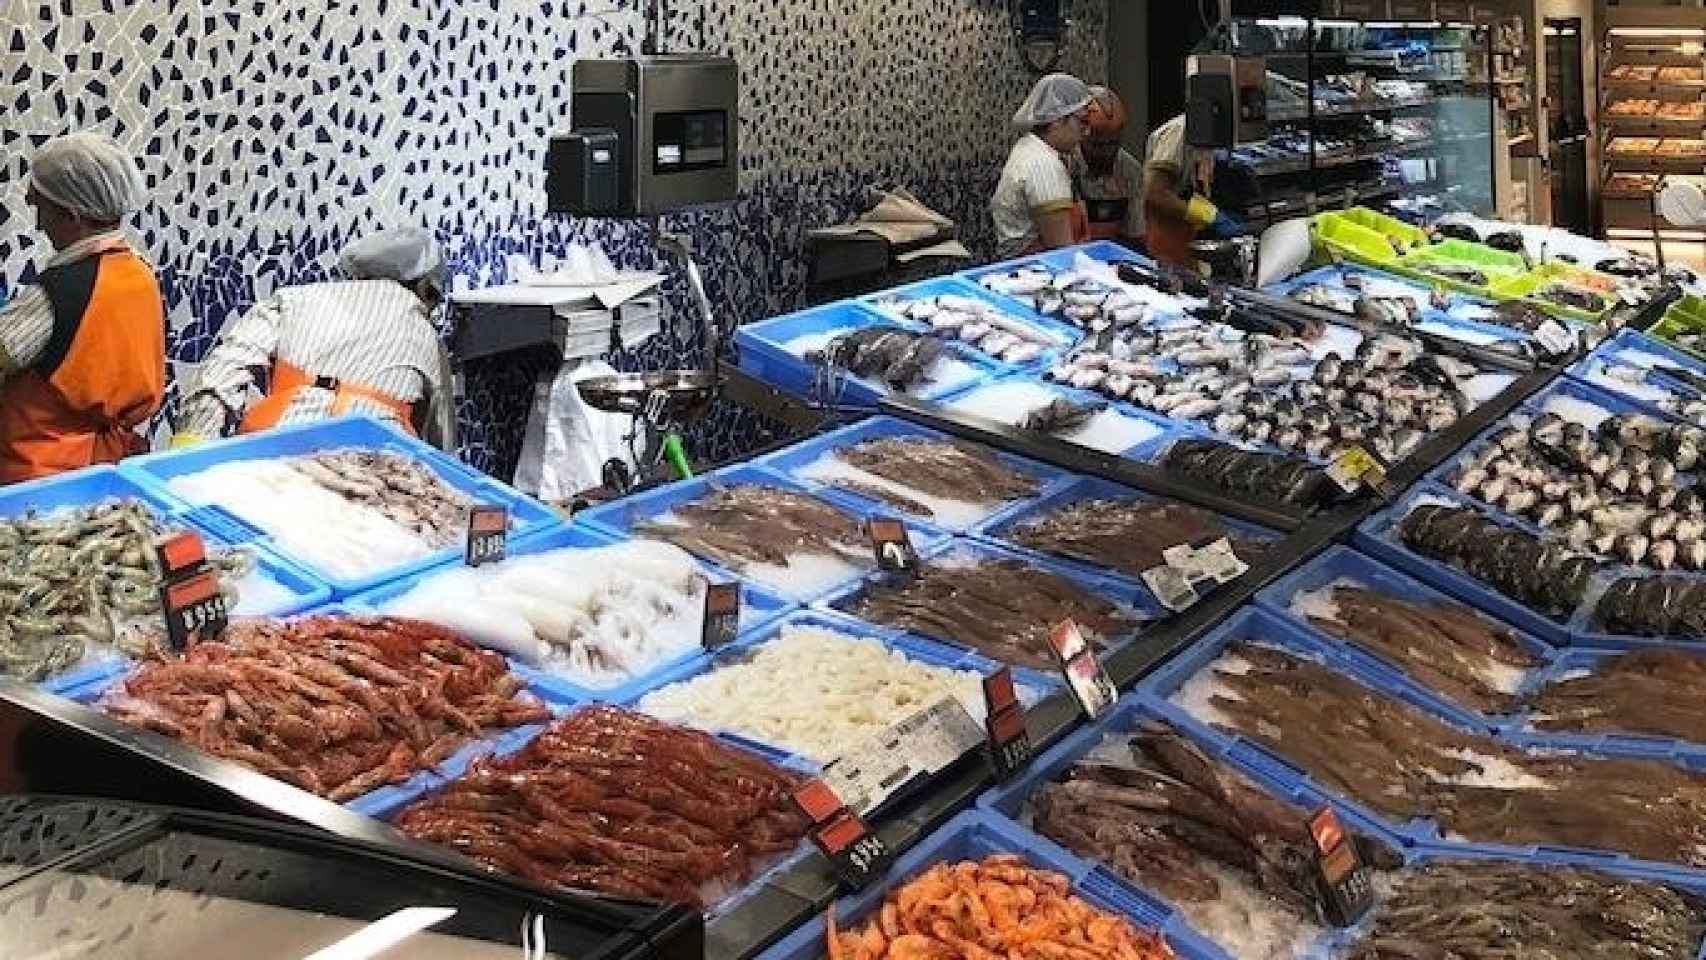 Una pescadería en un supermercado de Mercadona.